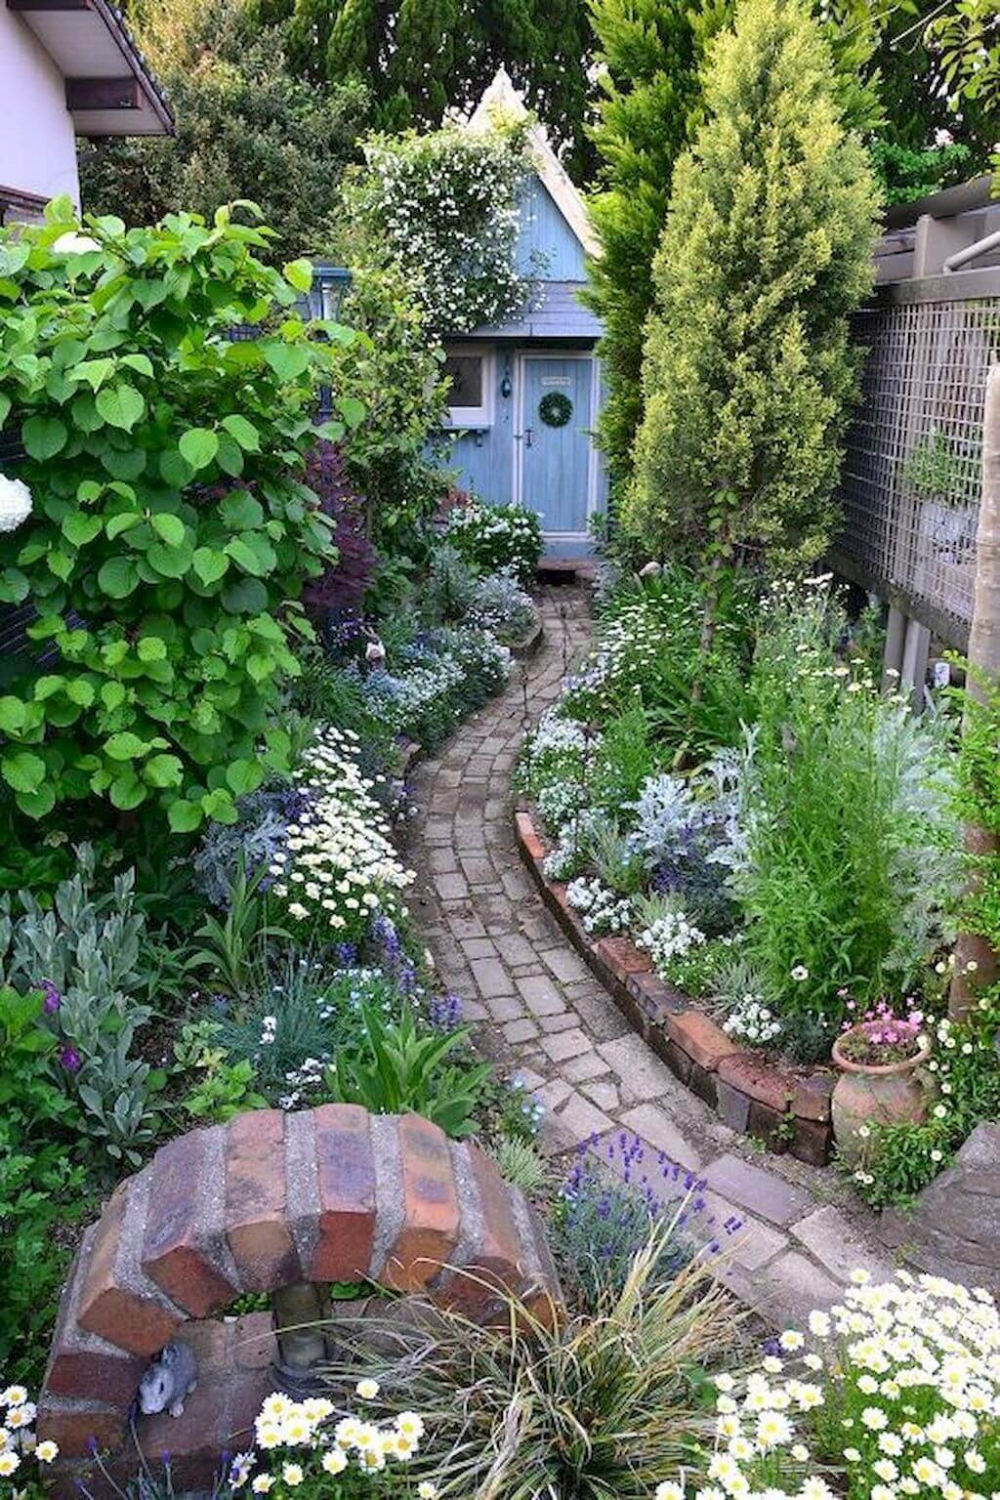 Nice Modern English Country Garden Design Ideas